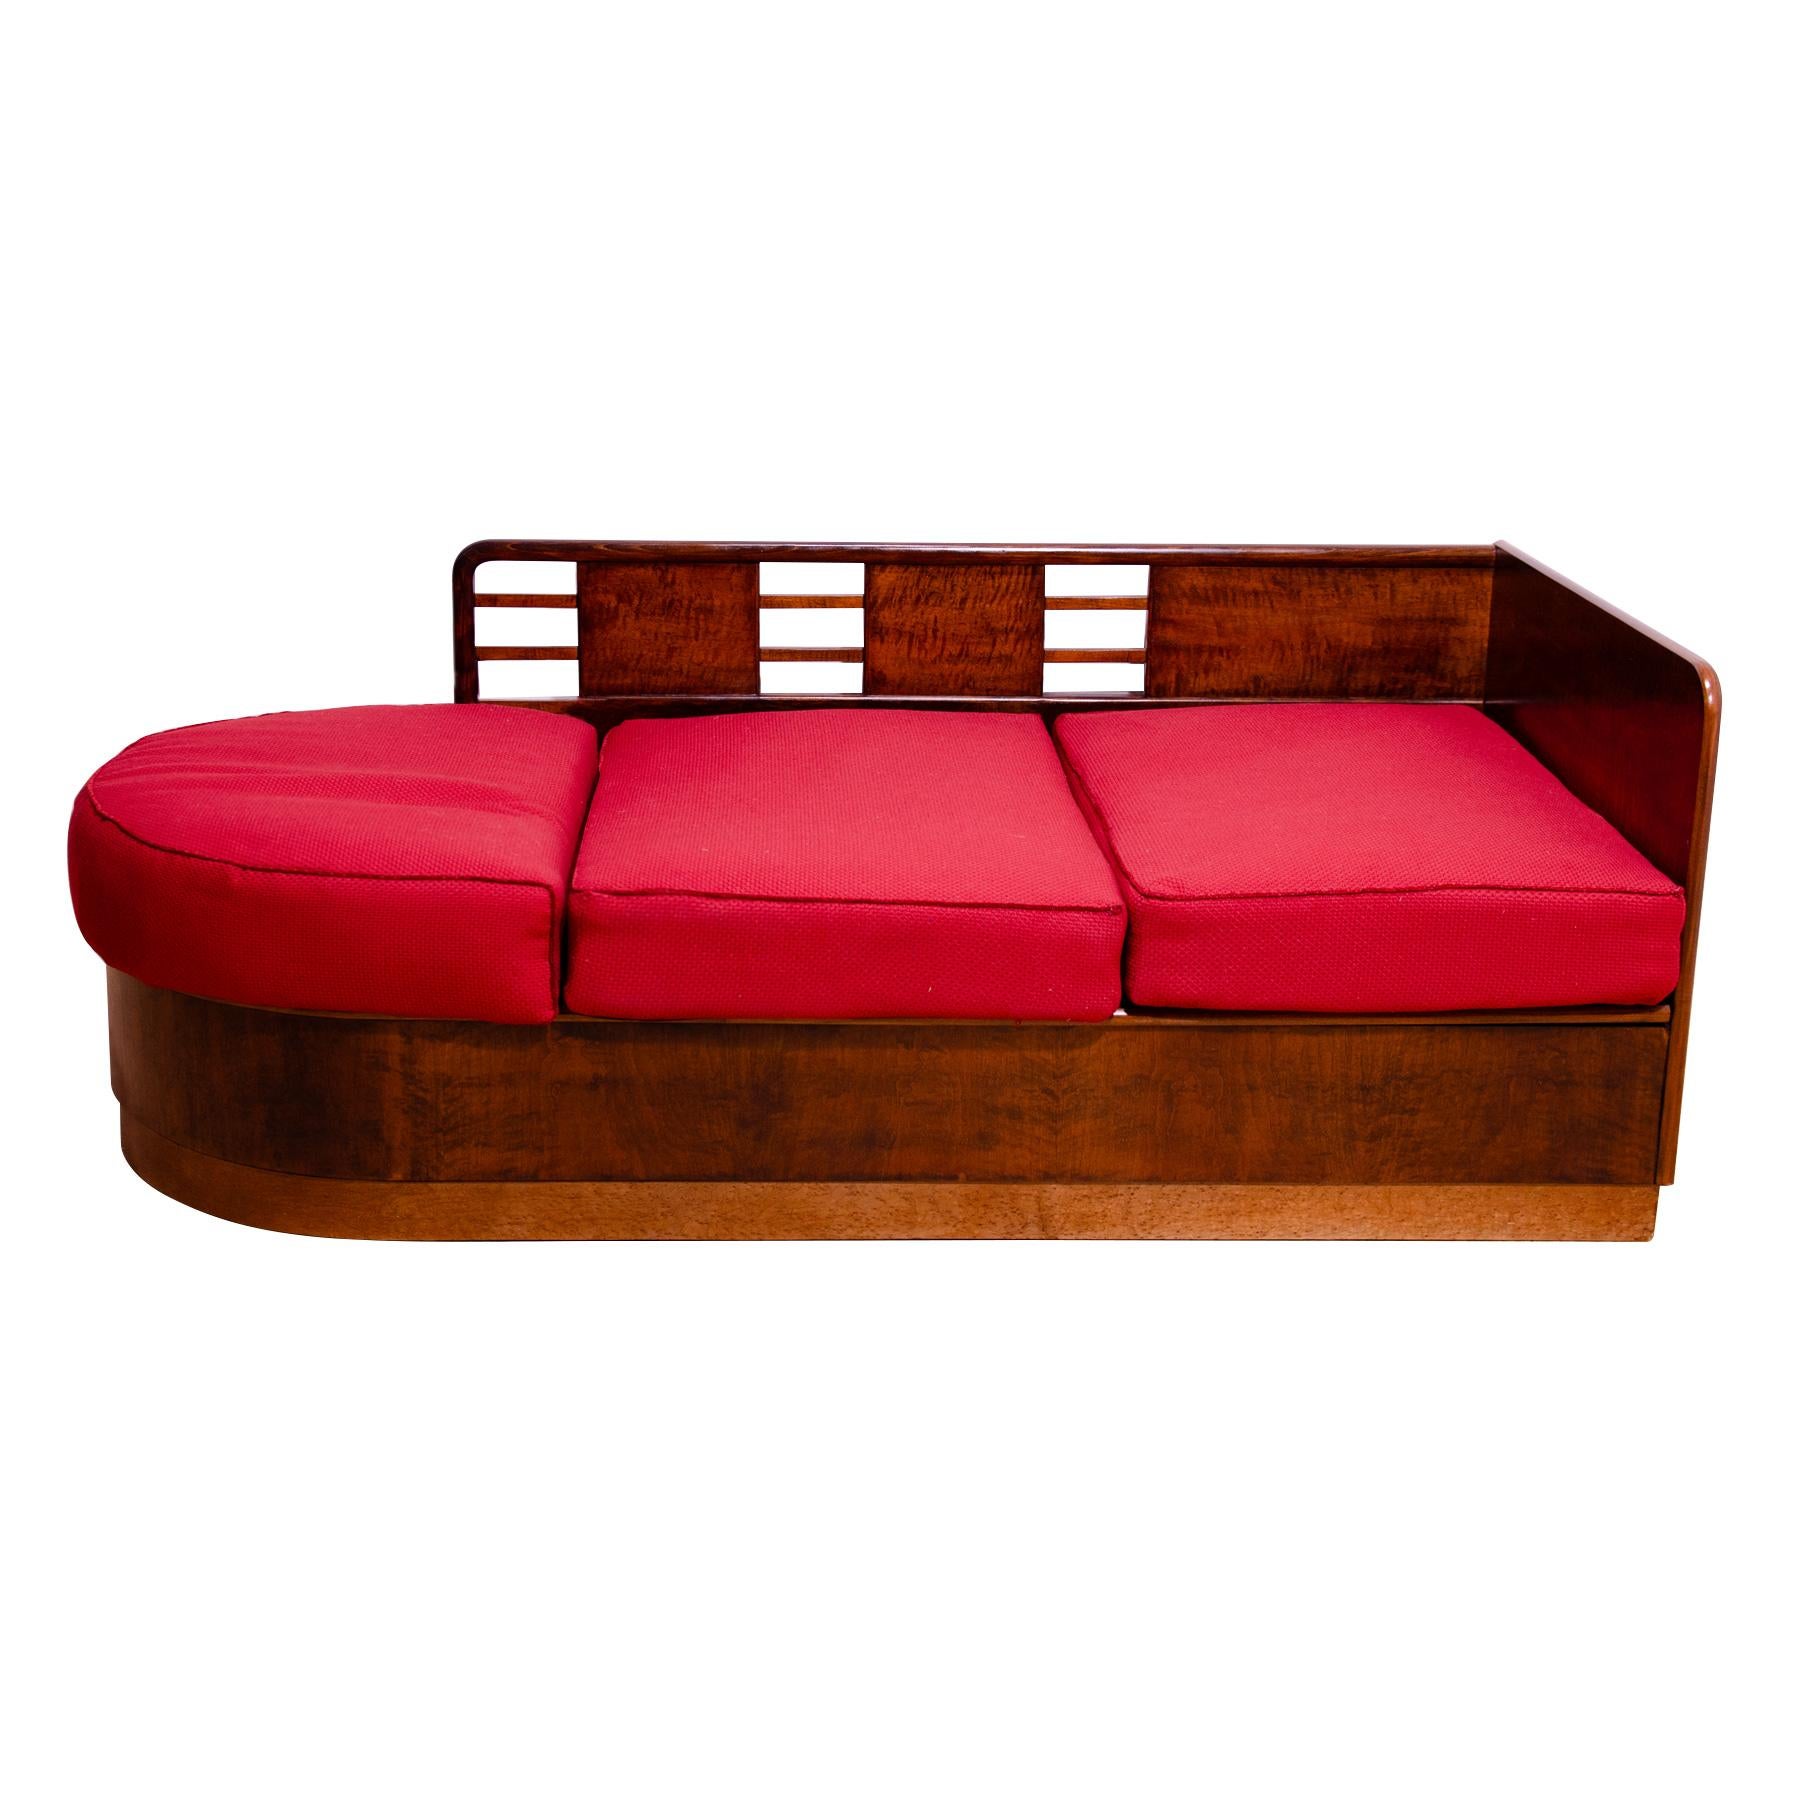 Dieses Sofa im ART DECO-Stil wurde in den 1930er Jahren in der ehemaligen Tschechoslowakei entworfen und hergestellt. Sie wurde wahrscheinlich von der Firma Líšen hergestellt.
Es weist ein sehr interessantes Design auf, das an die Form eines Bootes